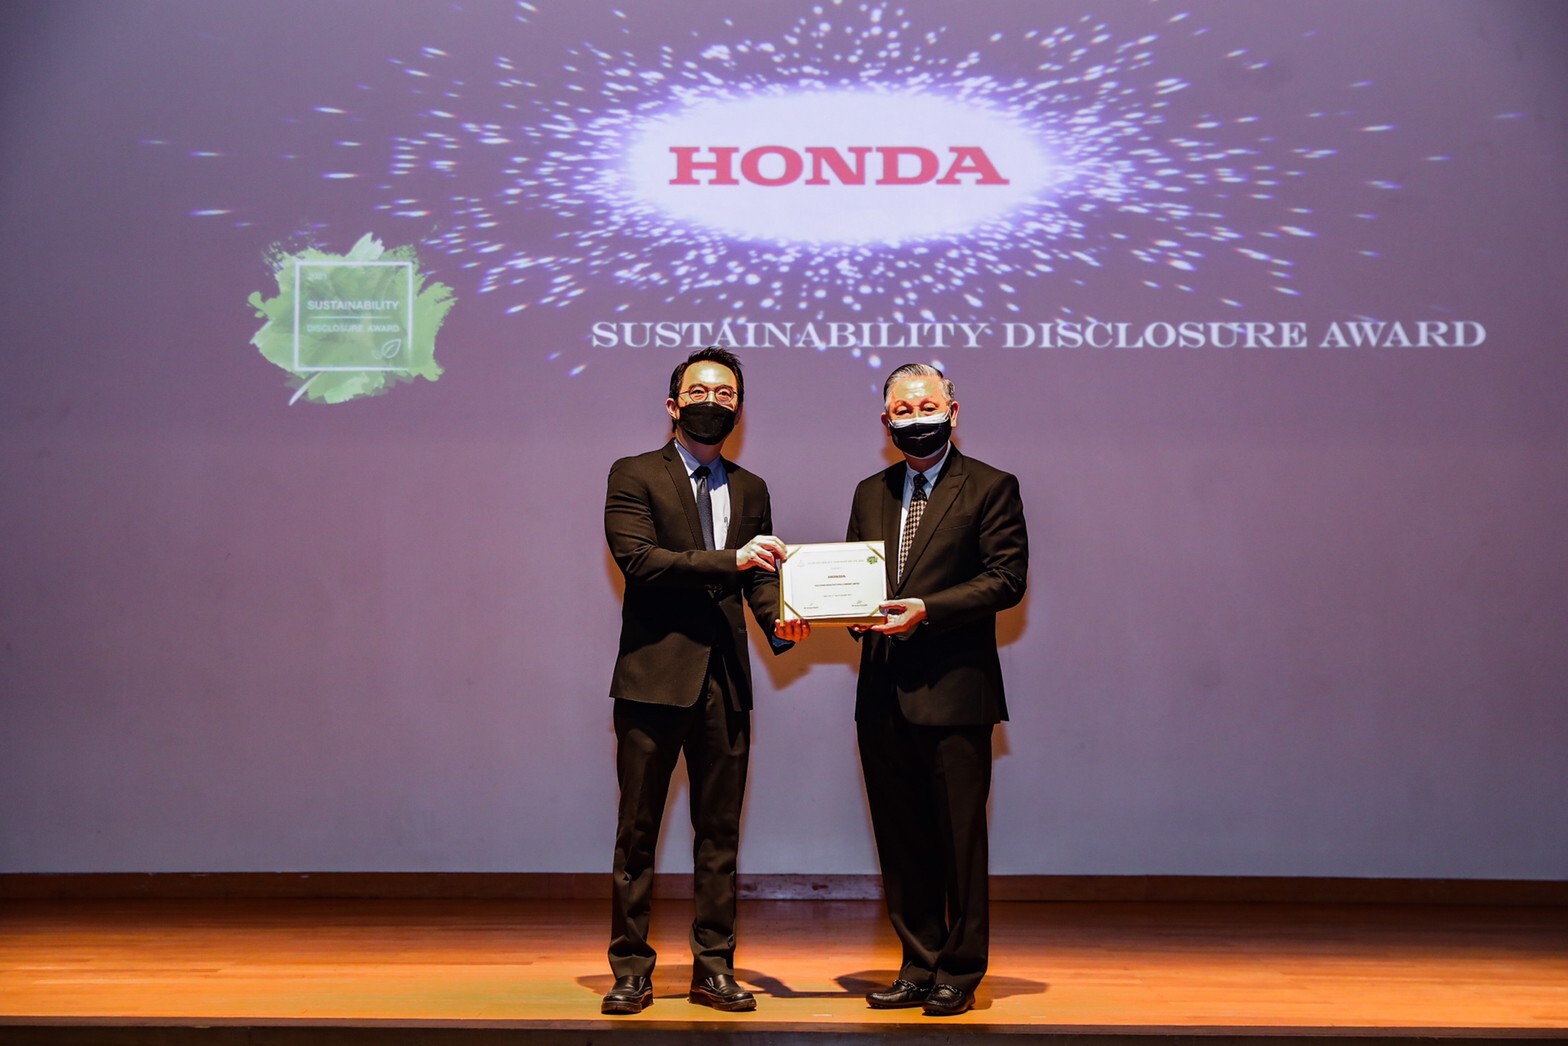 "ฮอนด้า" คว้ารางวัลเกียรติคุณสูงสุด Sustainability Disclosure Award ต่อเนื่อง 3 ปีซ้อน